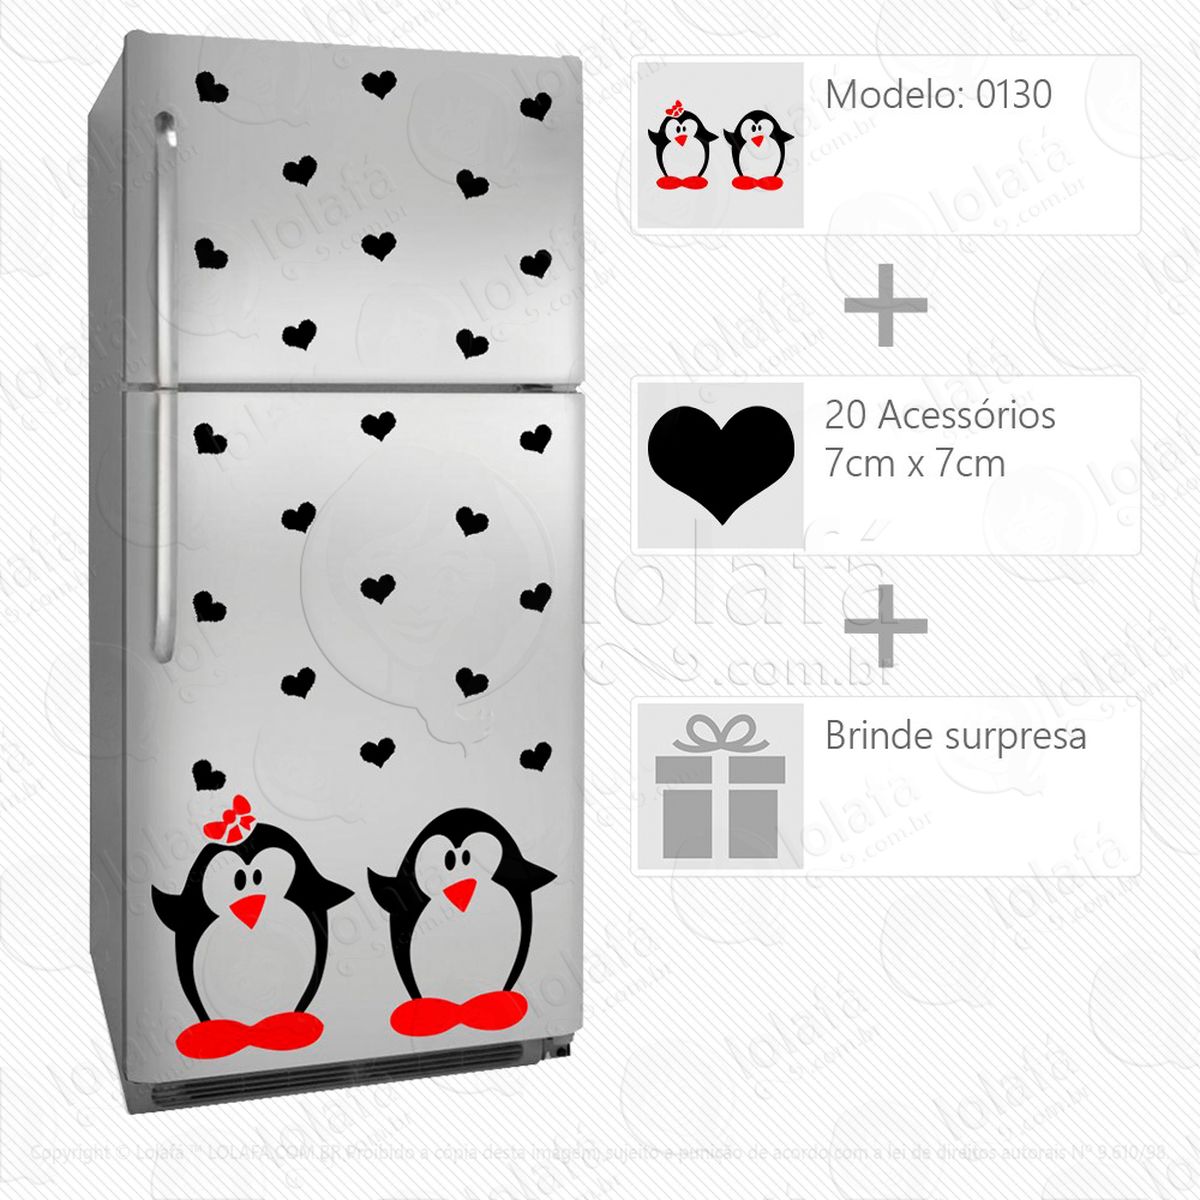 pinguins adesivo para geladeira e frigobar - mod:130